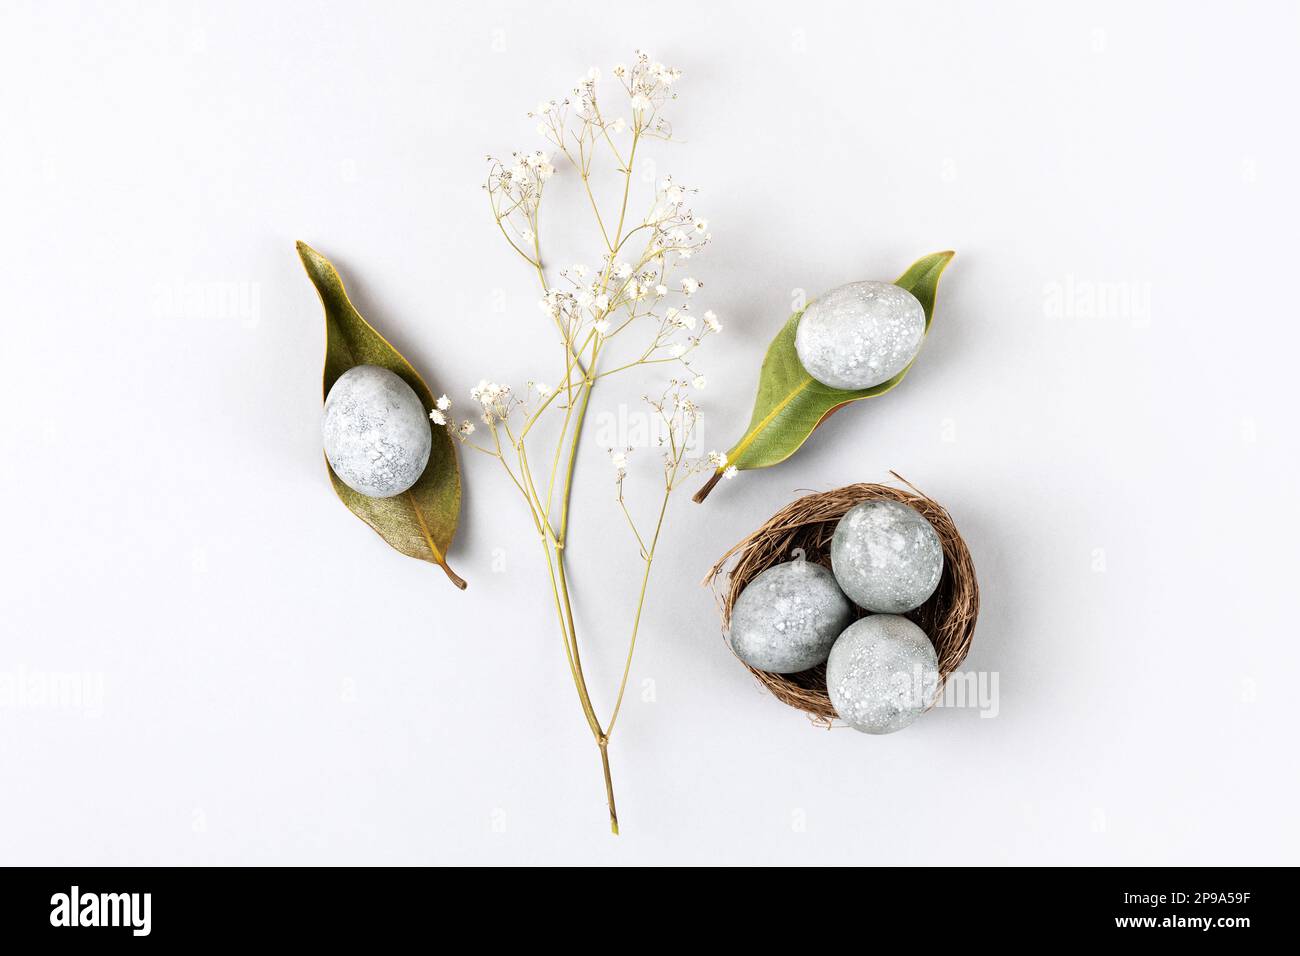 Concepto de Pascua ecológico mínimo con flores secas. Huevos grises en hojas secas de magnolia y en un nido marrón de ramitas sobre un fondo gris Foto de stock